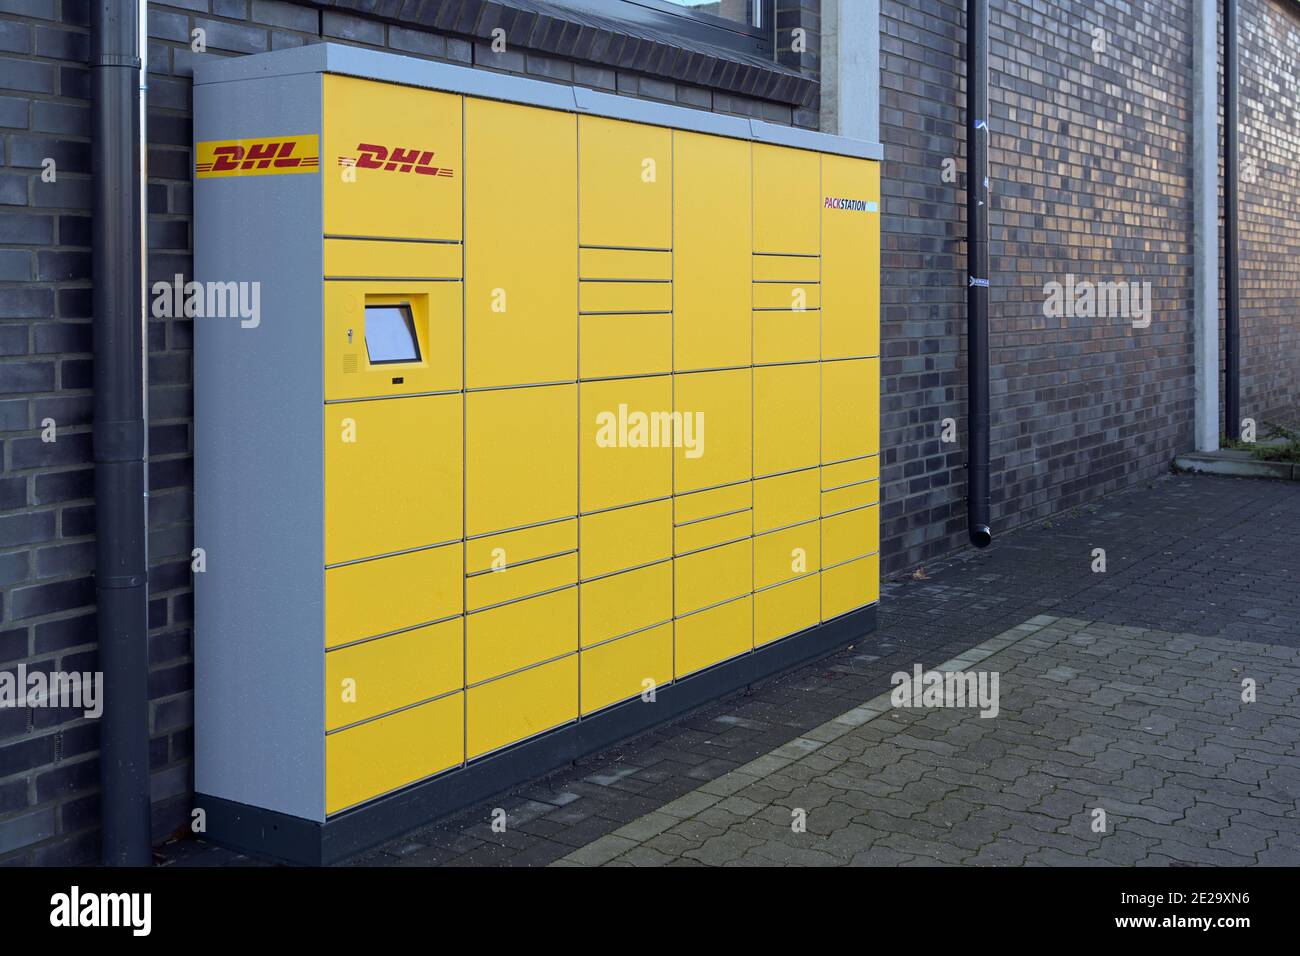 Ratzeburg, Allemagne, 12 janvier 2021: DHL Packstation avec des boîtes où les clients peuvent envoyer et récupérer leurs colis commandés. Pendant le covid-19 pand Banque D'Images